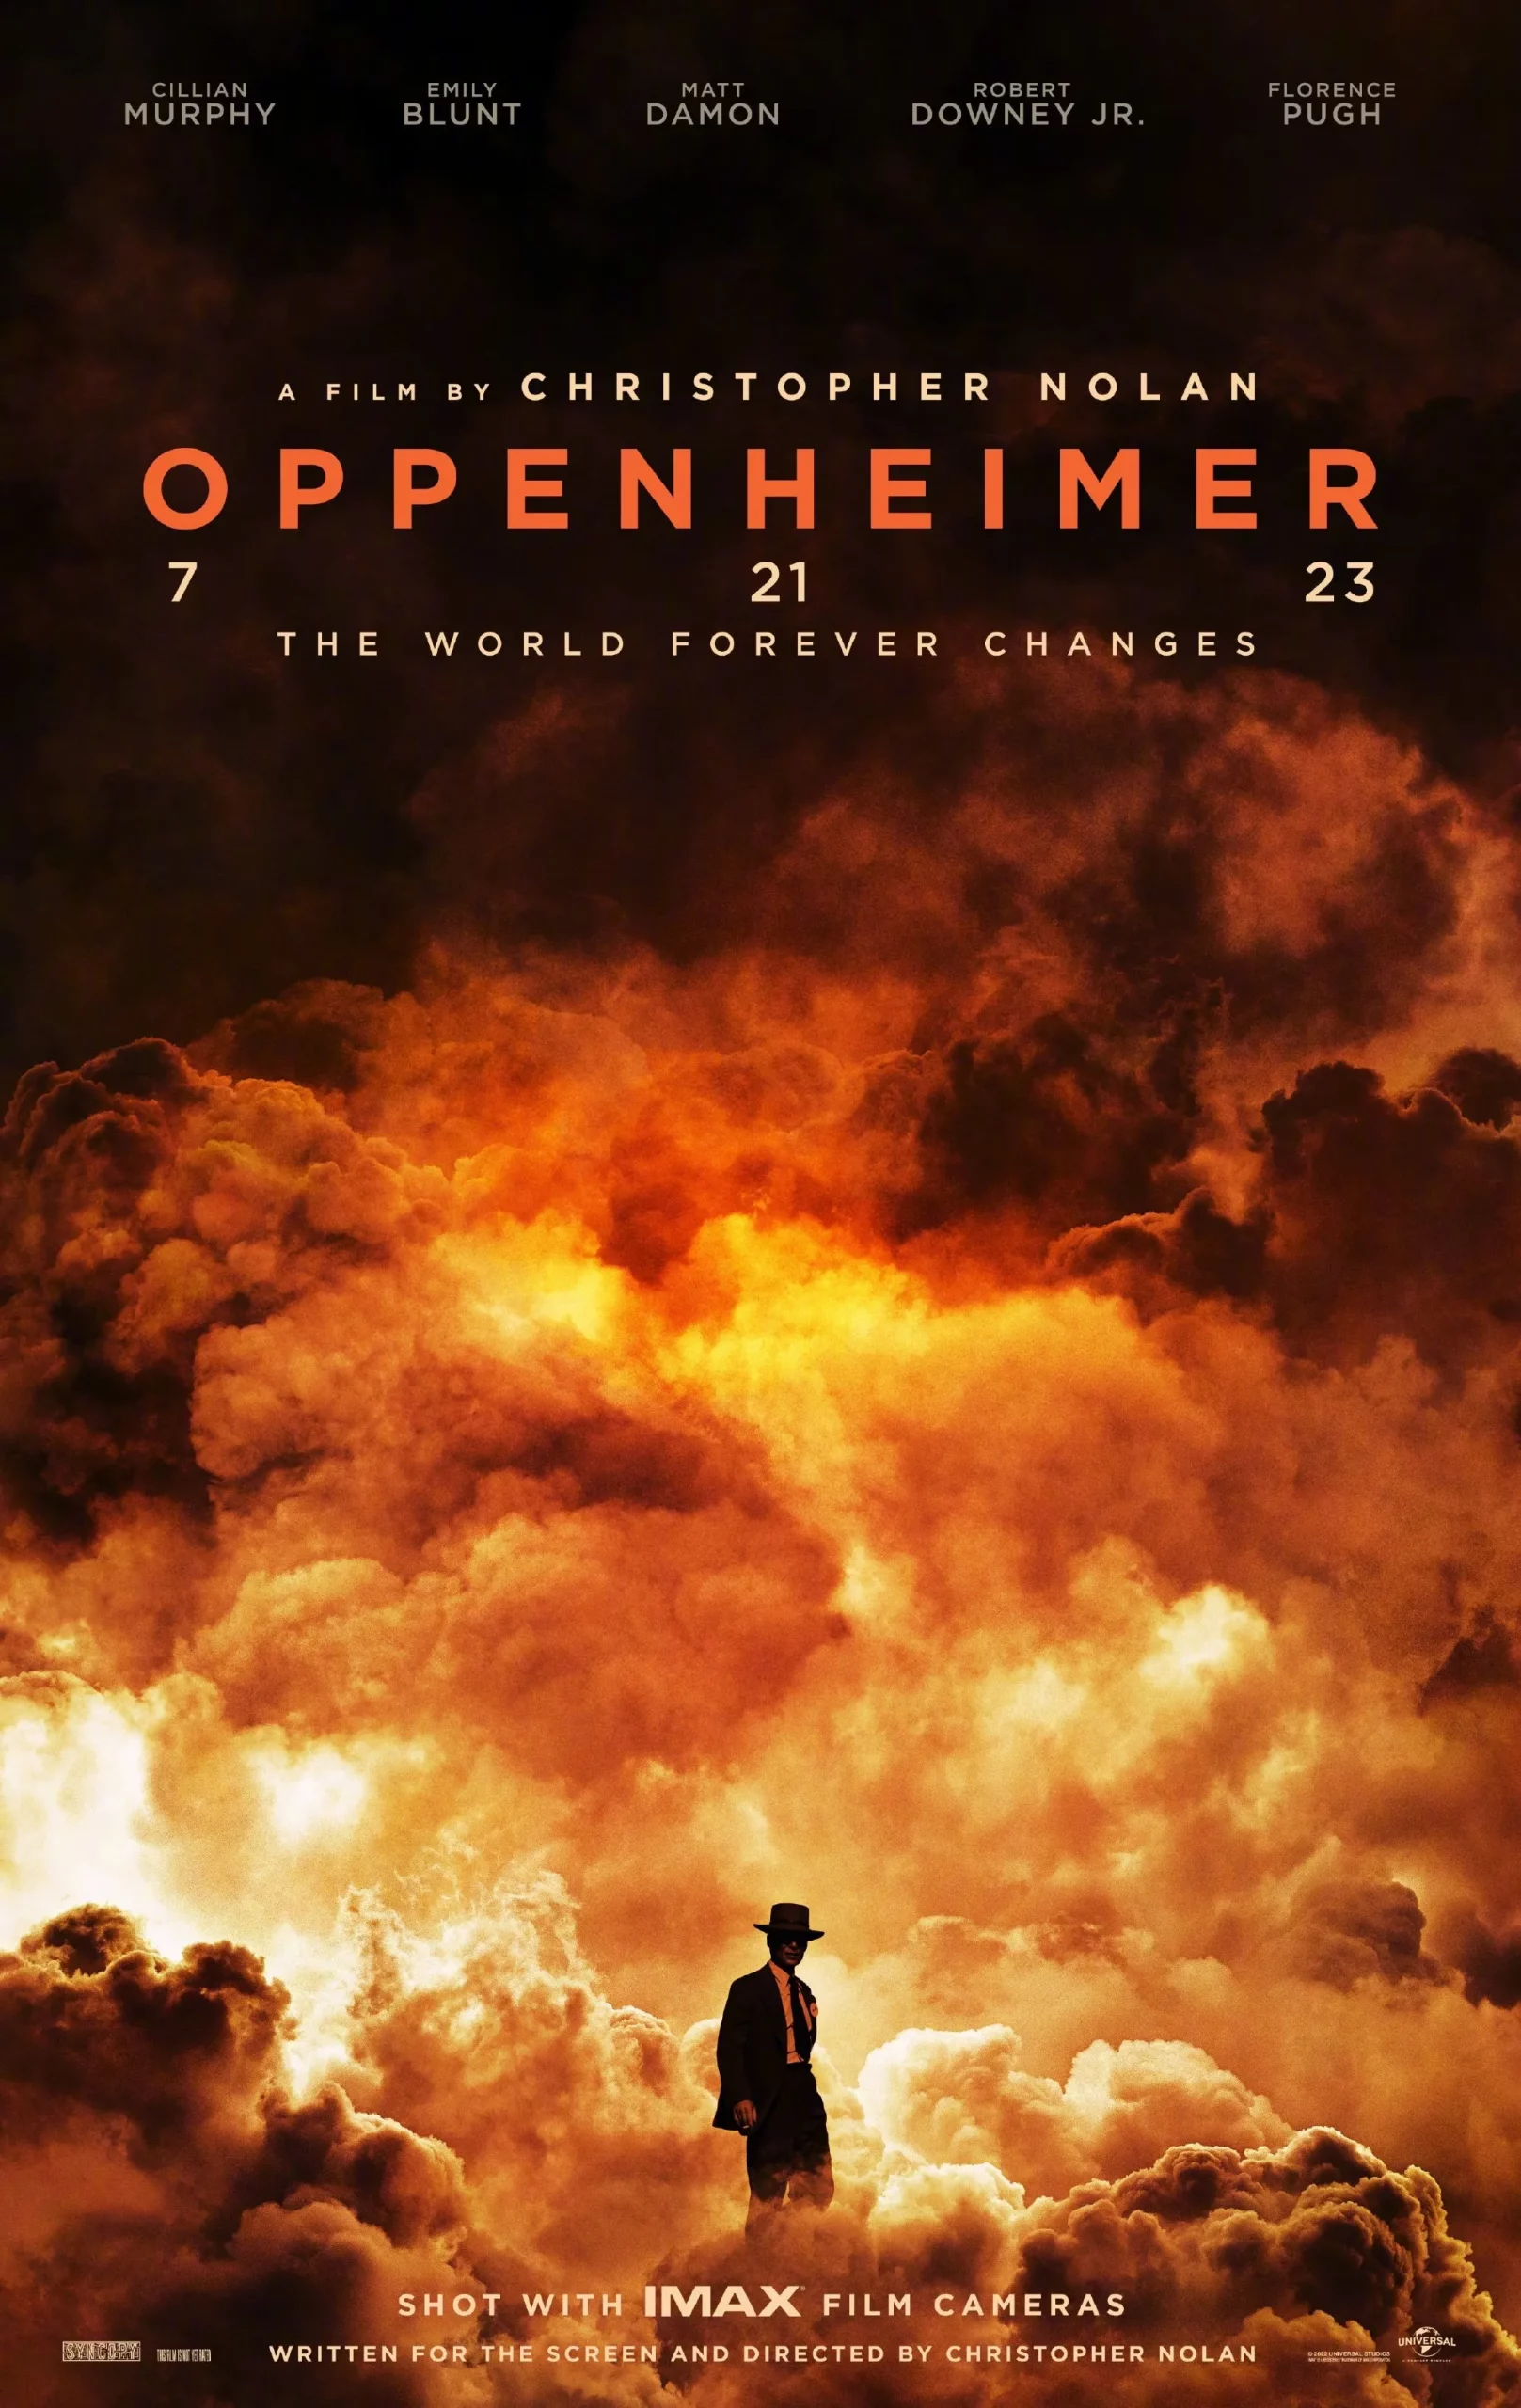 Christopher Nolan's new film "Oppenheimer" revealed the first poster | FMV6